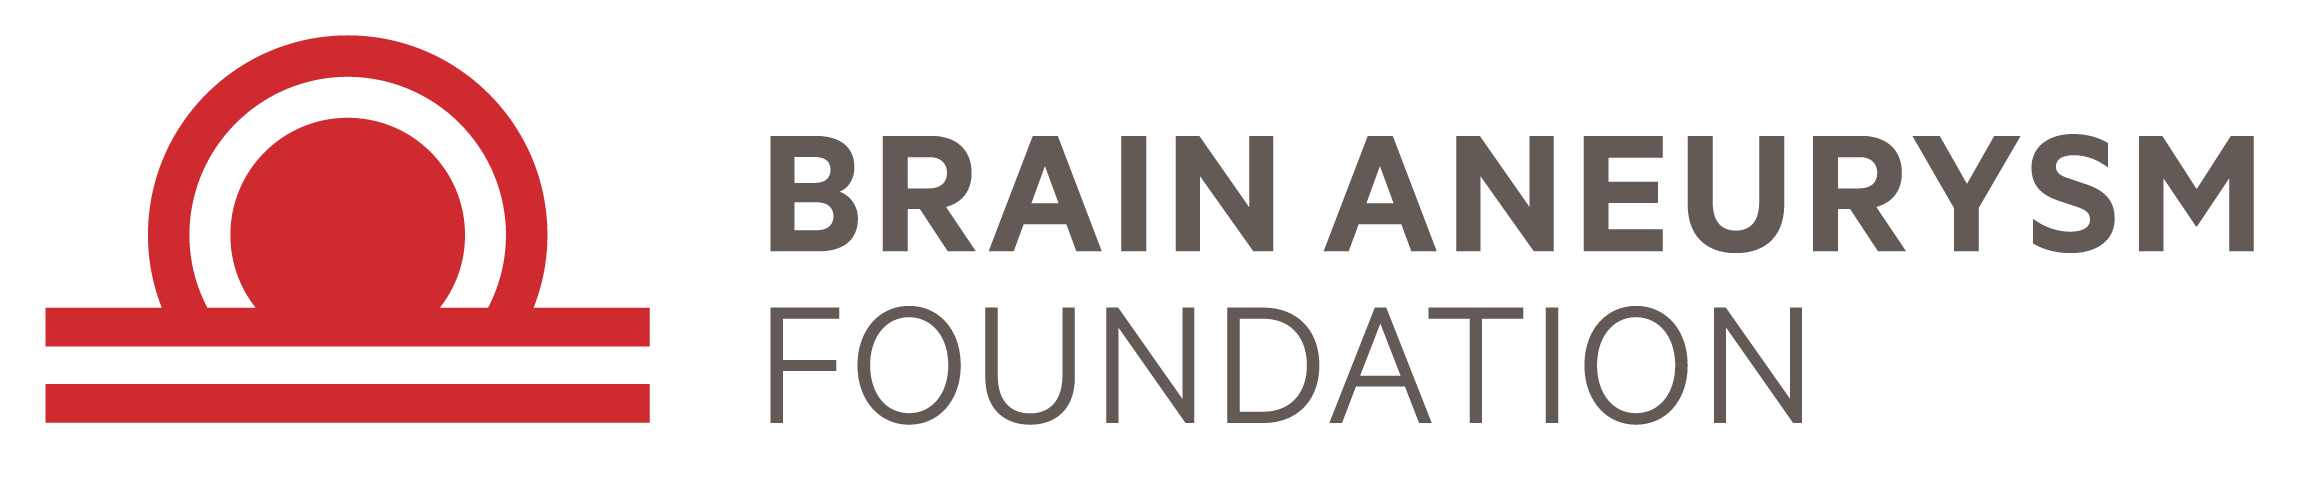 Brain Aneurysm Foundation 